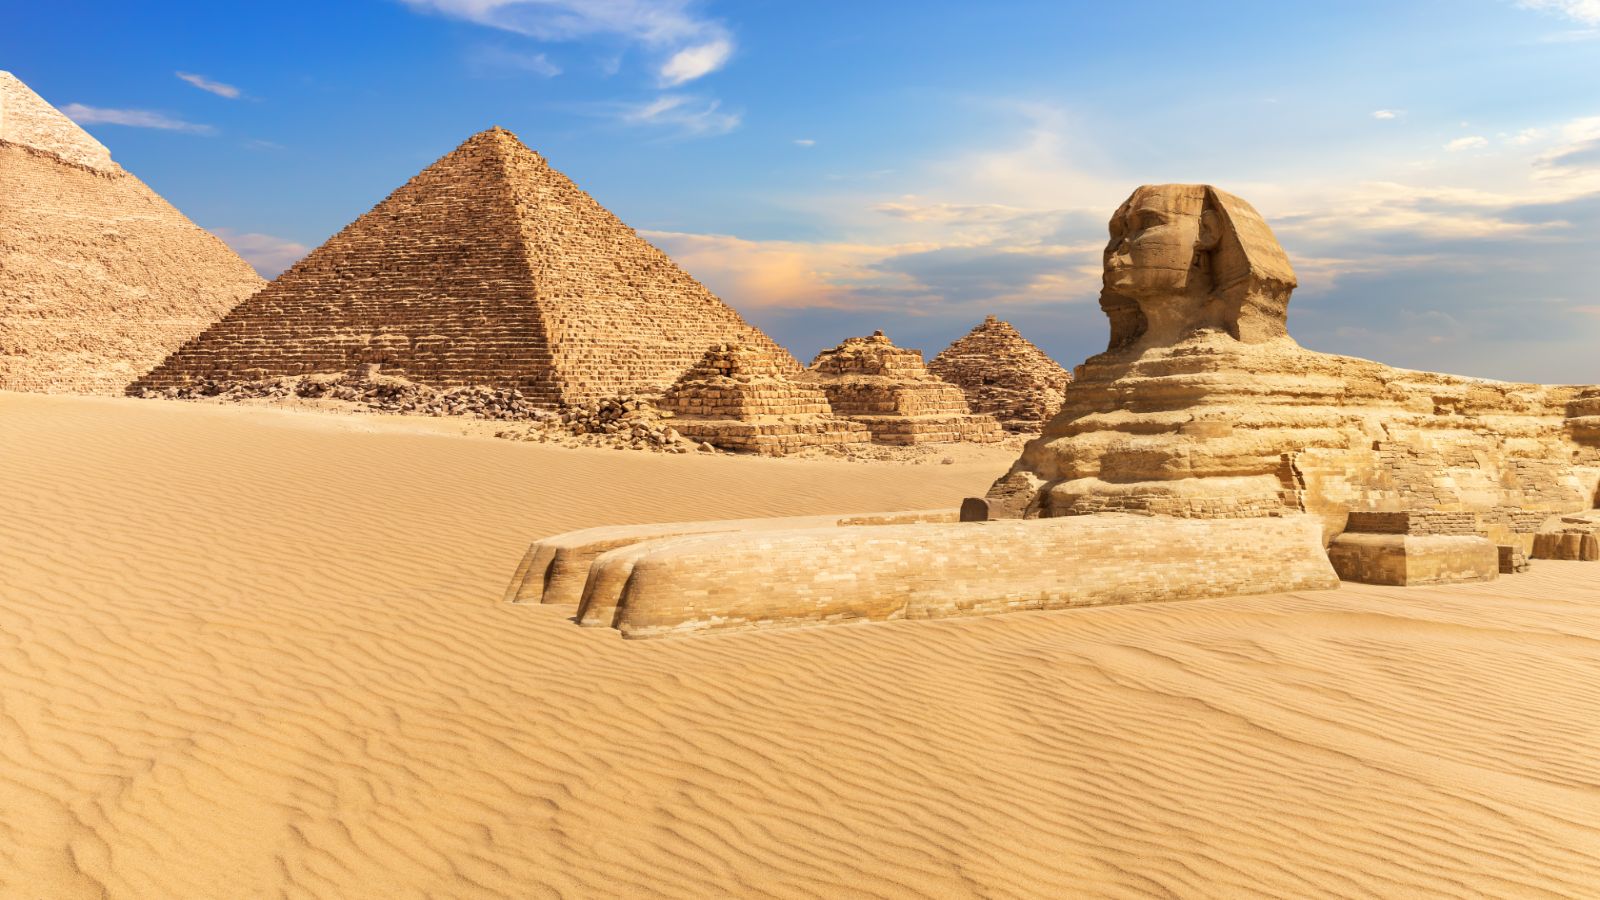 Egyptian Adventure